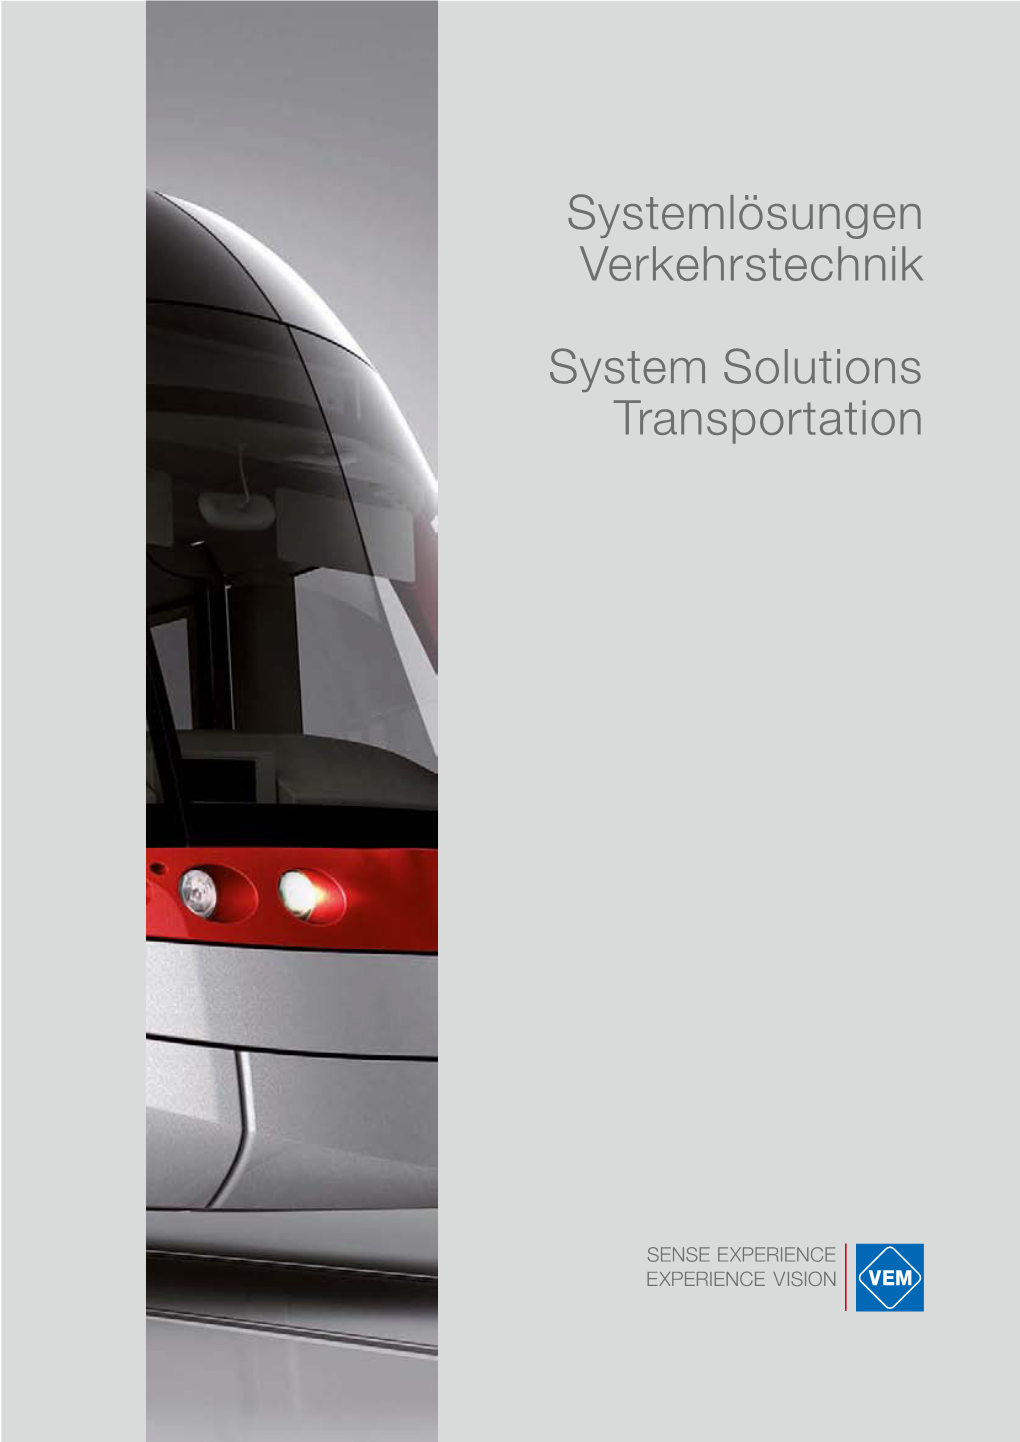 Systemlösungen Verkehrstechnik System Solutions Transportation